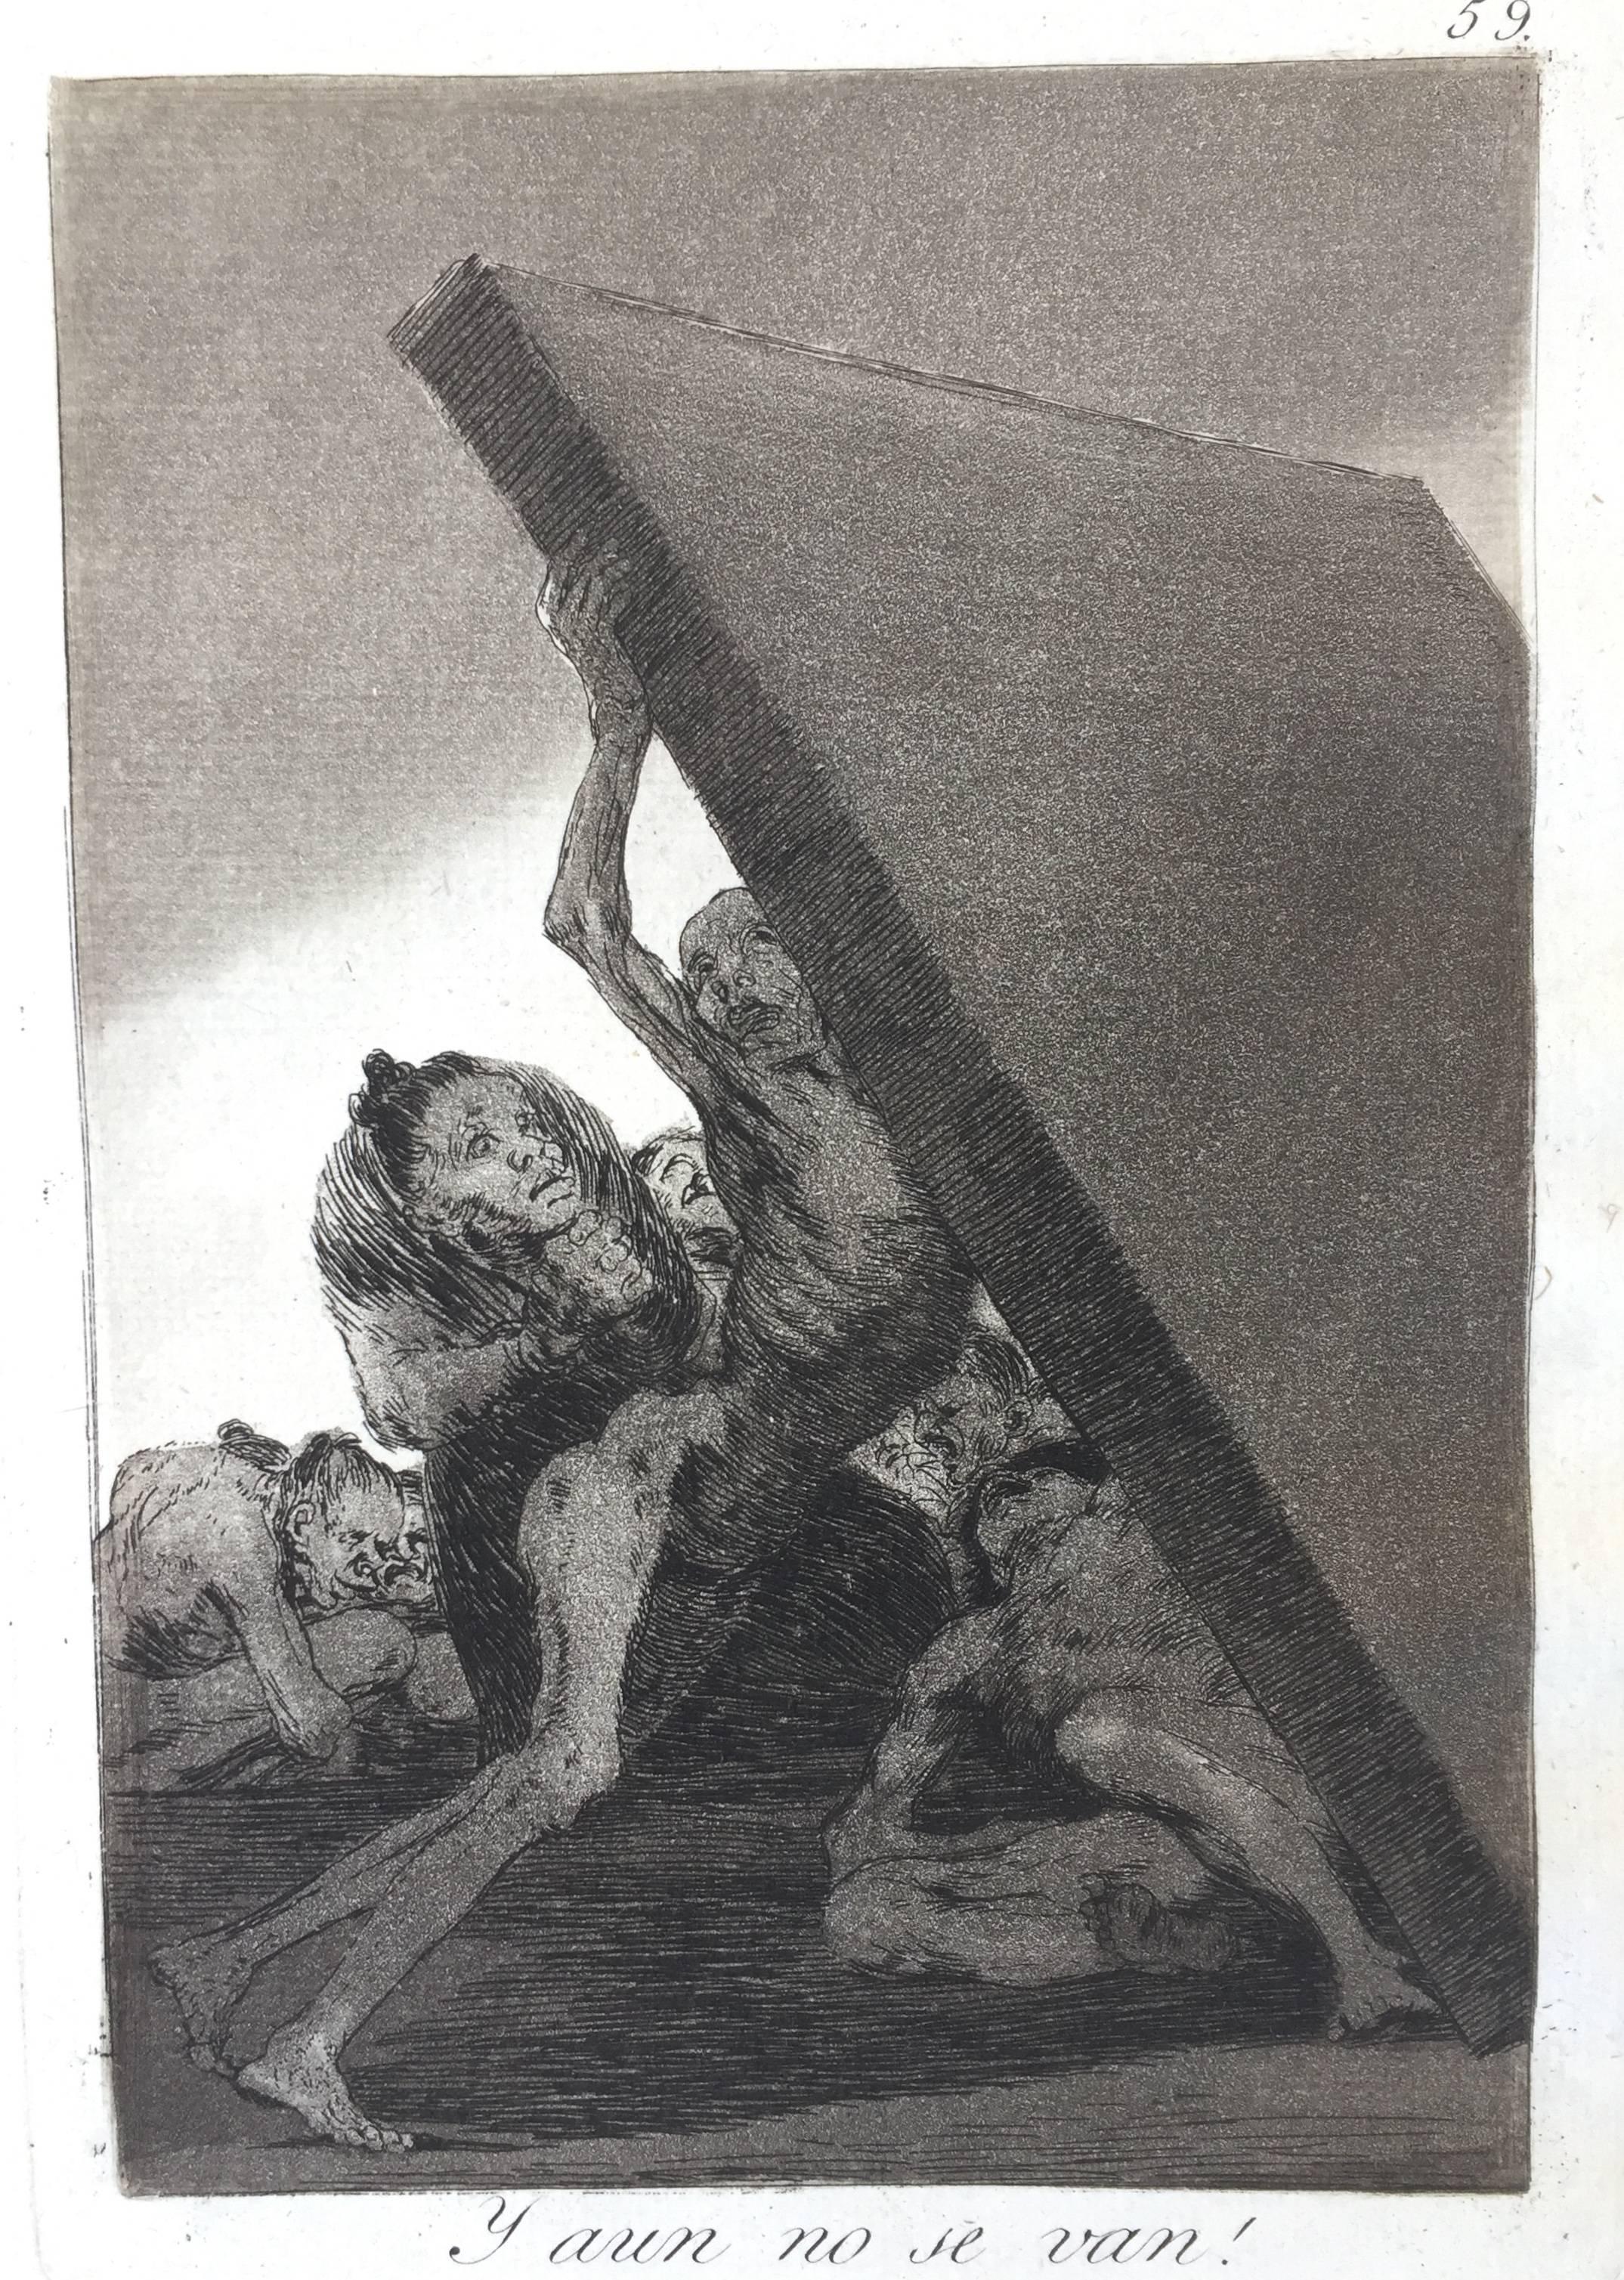 Y AUN NO SE VAN - Print by Francisco Goya